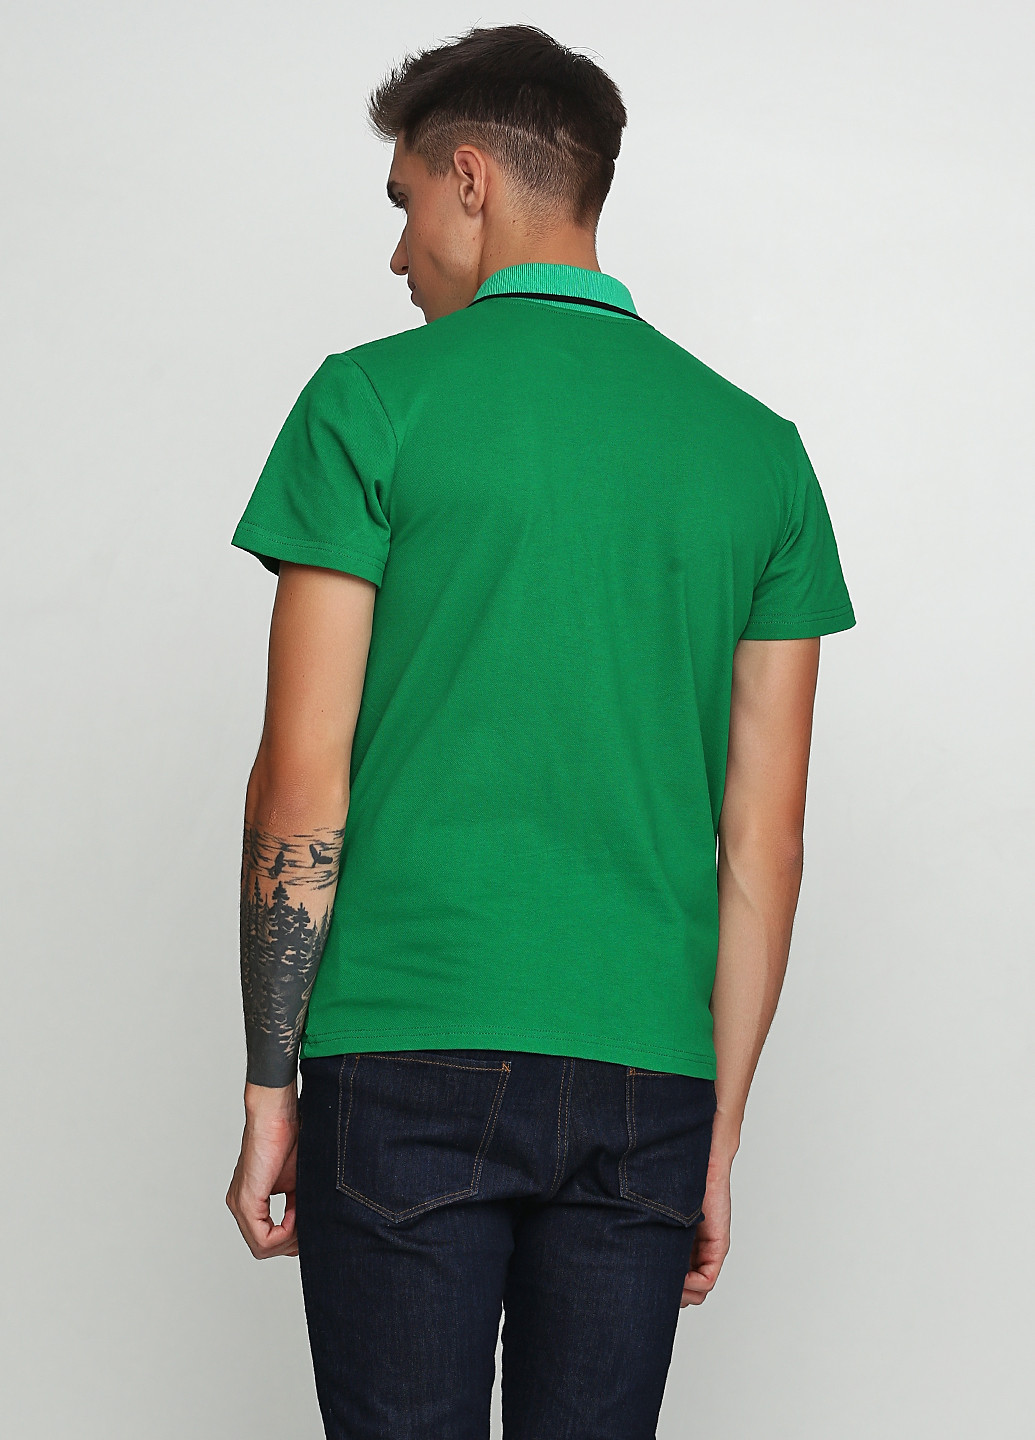 Зеленая футболка-поло для мужчин Manatki с рисунком